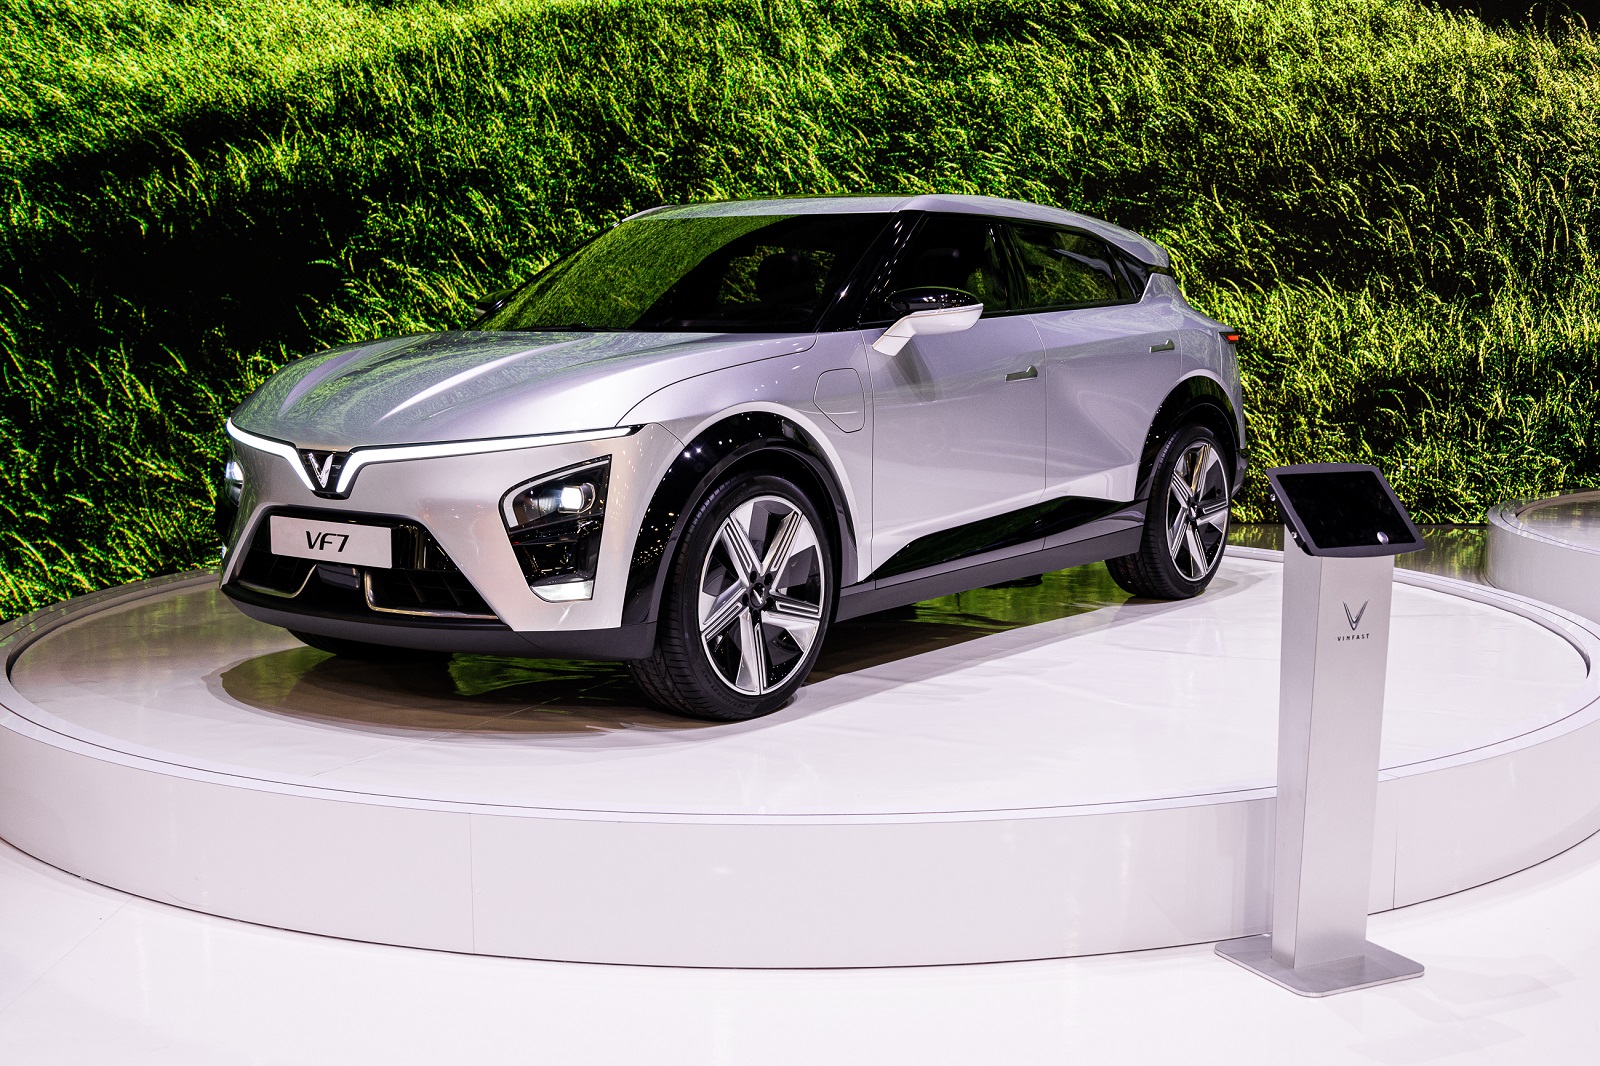 VF 7 - chiếc ô tô điện đại diện cho tương lai của ngành công nghiệp ô tô. Hình ảnh này sẽ khiến bạn thấy rõ được sự tiên tiến và hiện đại của chiếc xe này. Hãy đến và xem để khám phá thêm về tương lai của ngành ô tô điện.